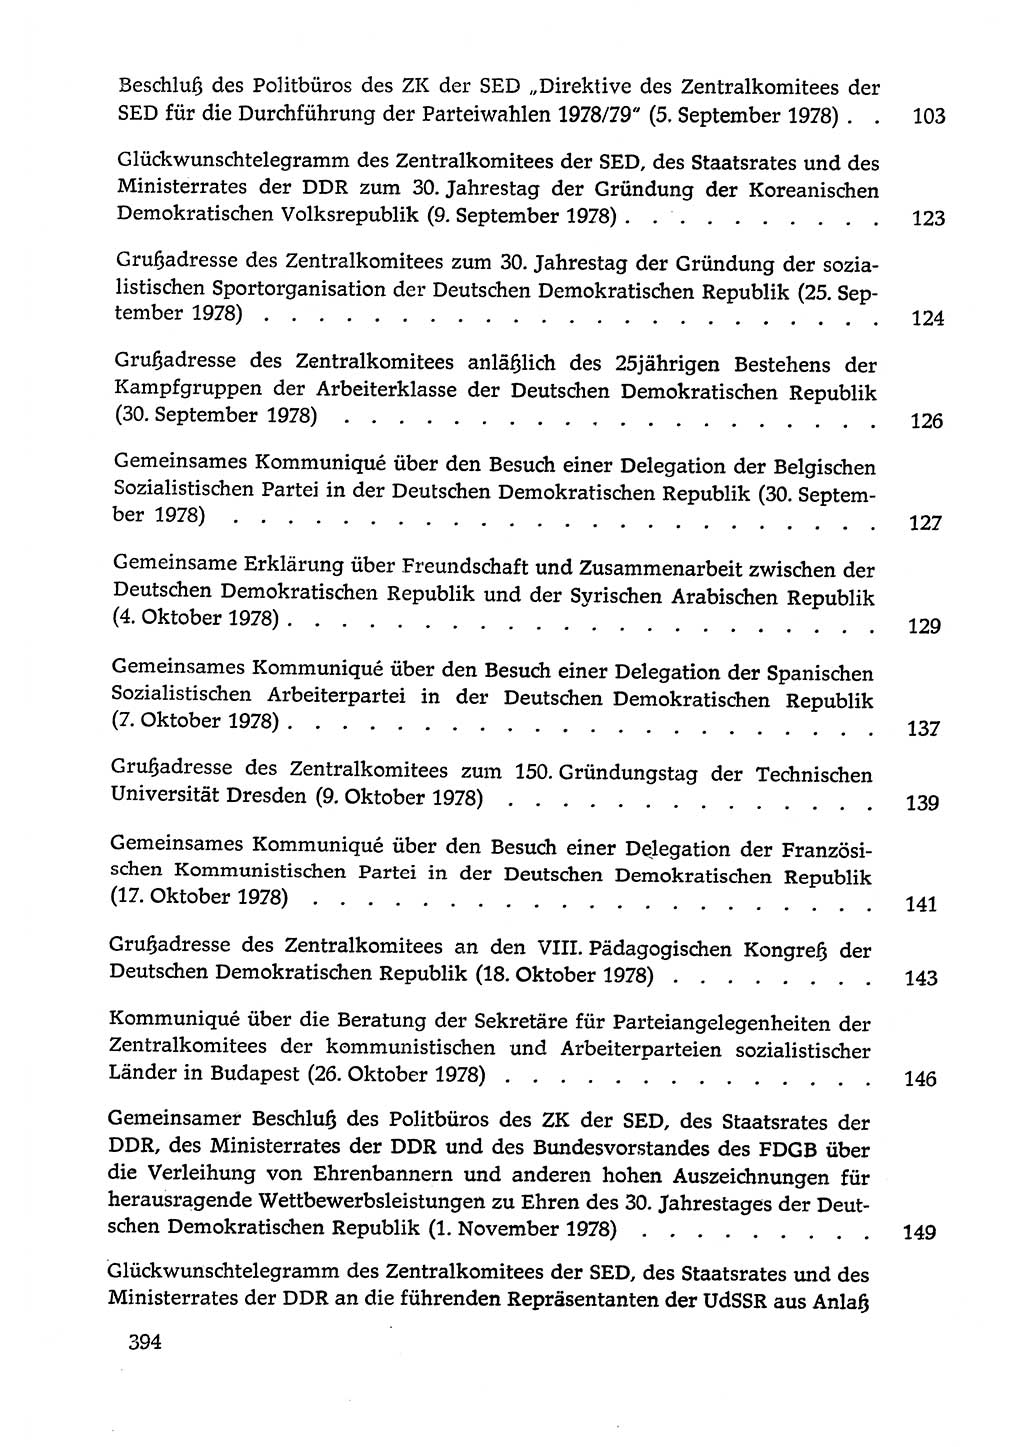 Dokumente der Sozialistischen Einheitspartei Deutschlands (SED) [Deutsche Demokratische Republik (DDR)] 1978-1979, Seite 394 (Dok. SED DDR 1978-1979, S. 394)